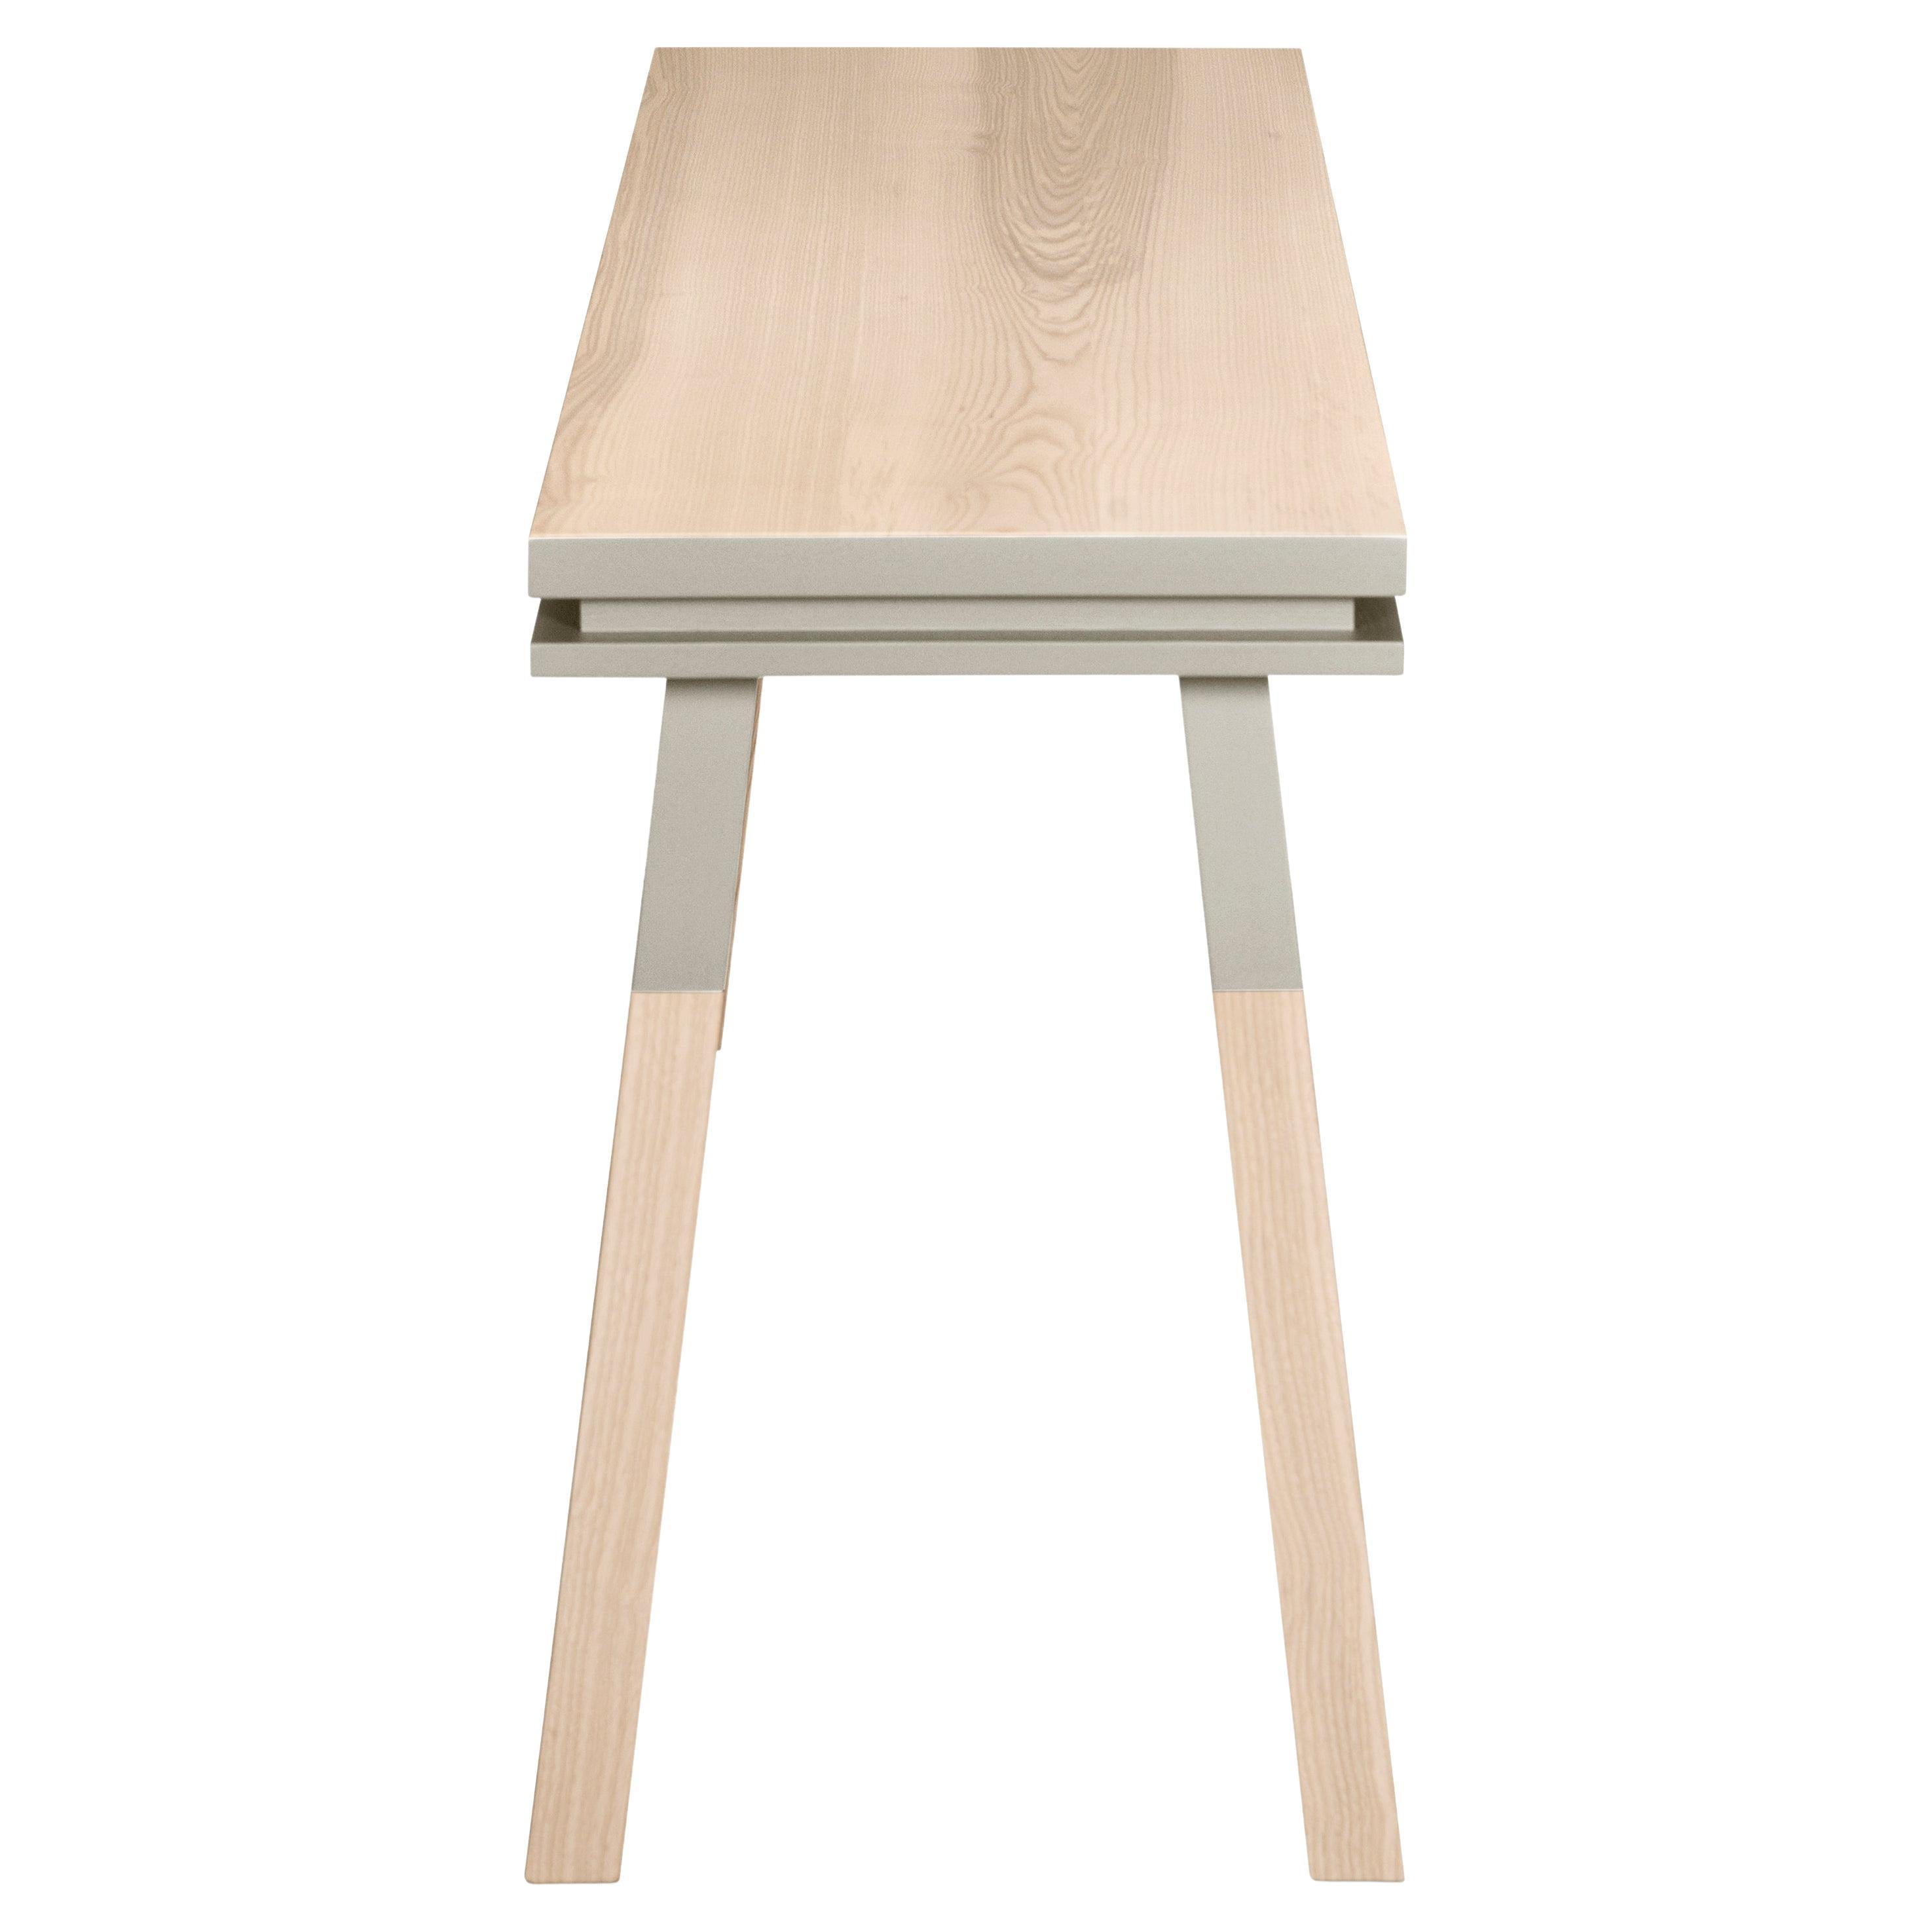 Table grise en bois massif, design scandinave par E. Gizard, Paris - fabrication artisanale